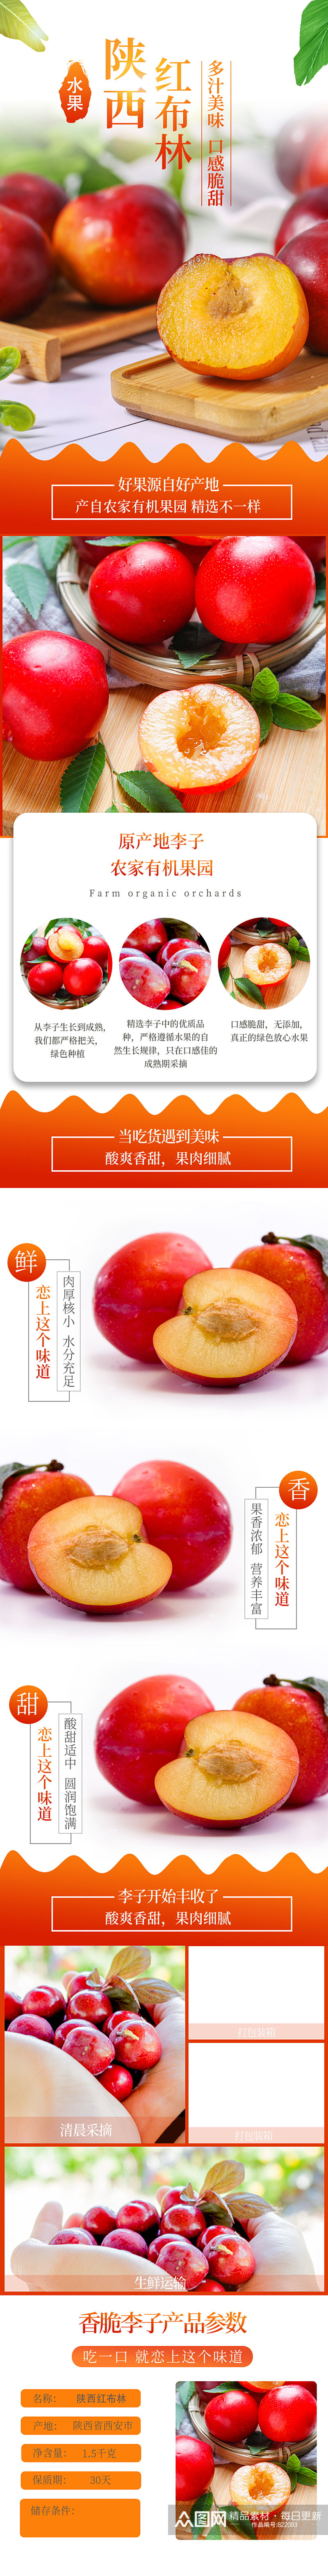 水果生鲜红布林李子详情页素材